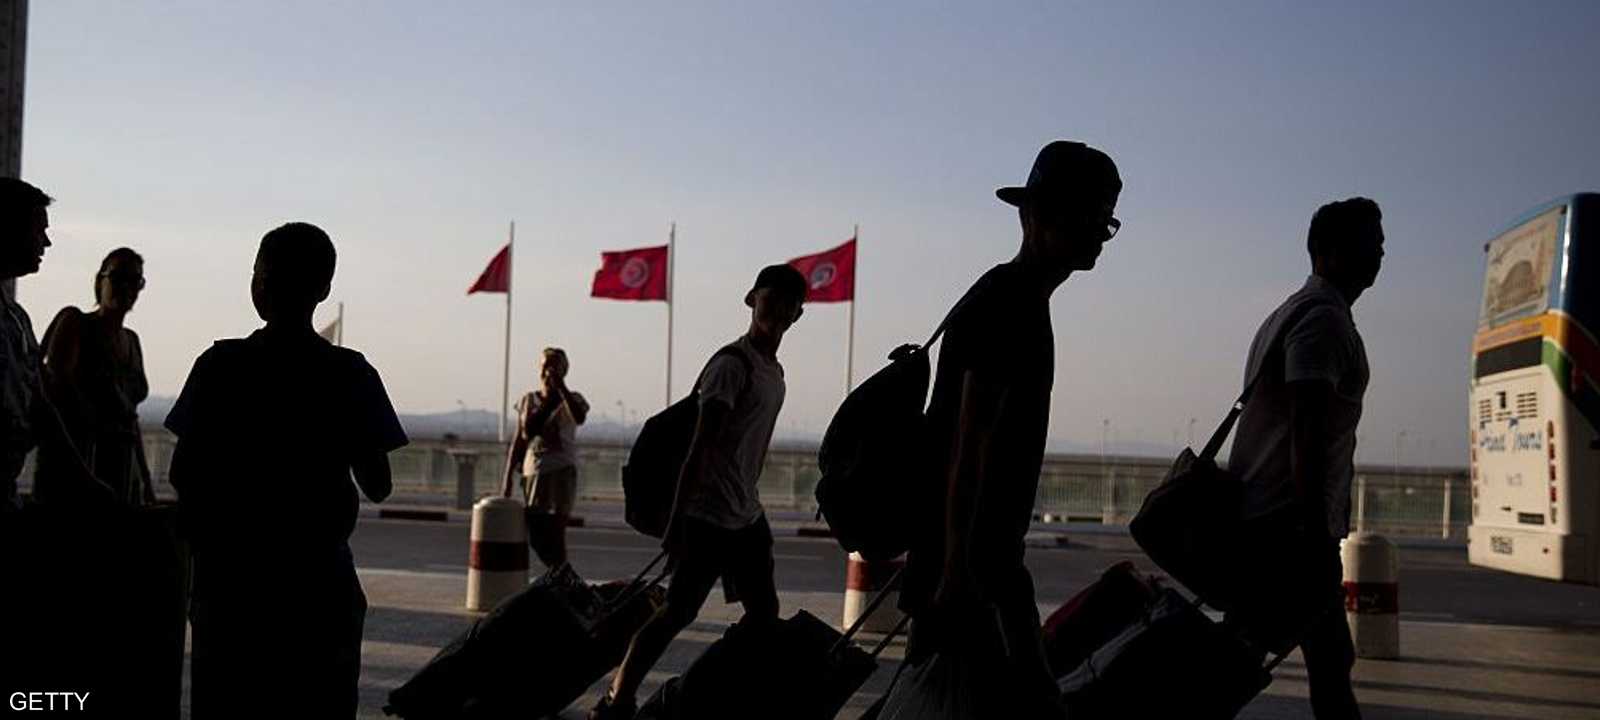 السياحة التونسية المستفيد الأكبر من الأزمة